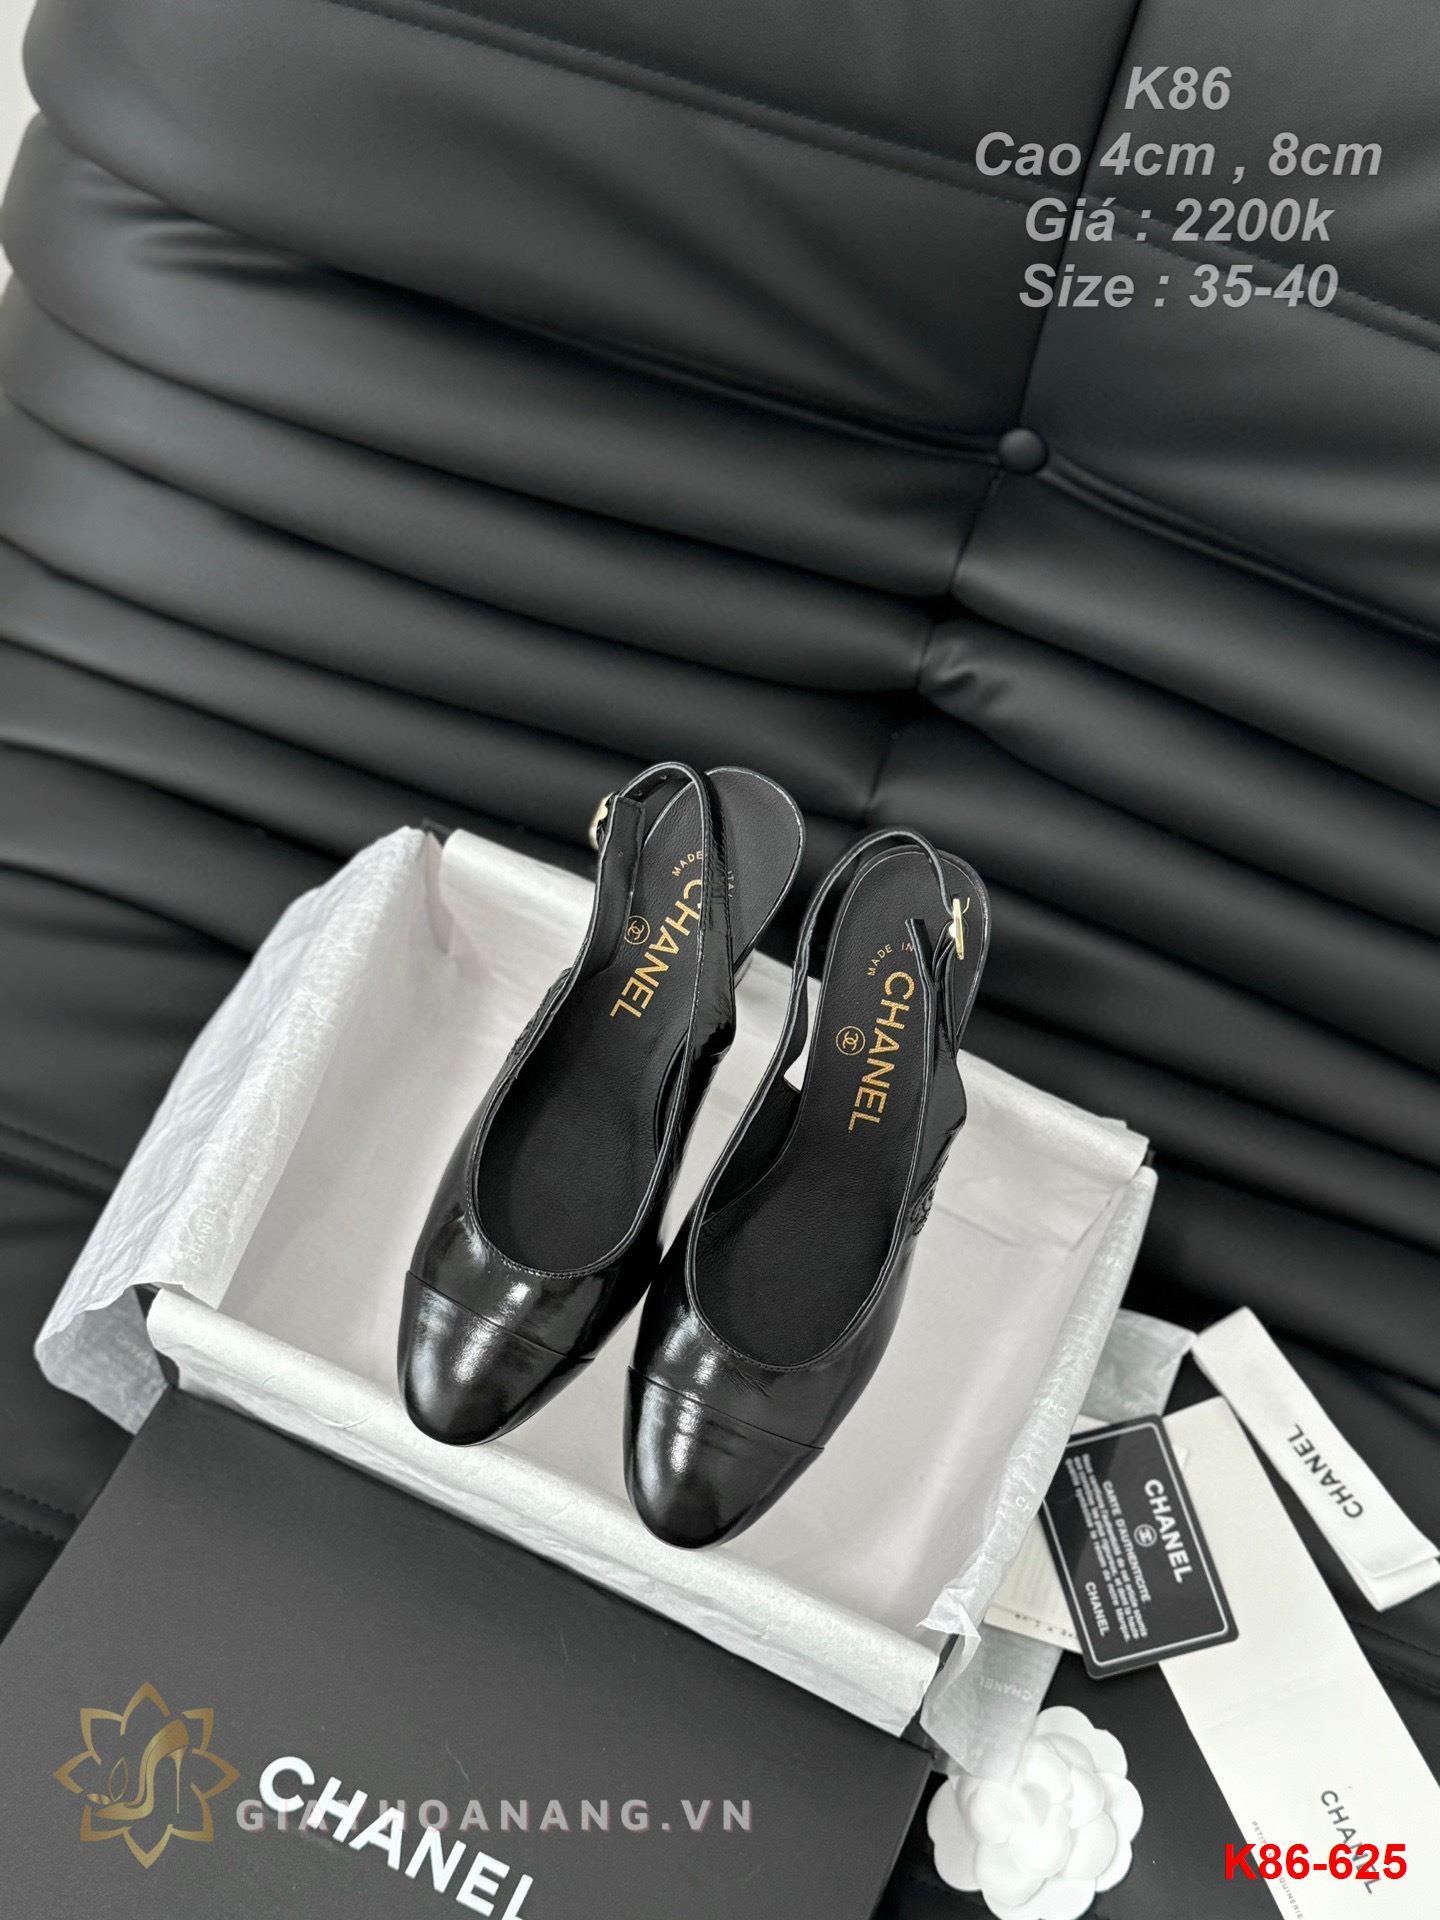 K86-625 Chanel sandal cao gót 4cm , 8cm siêu cấp